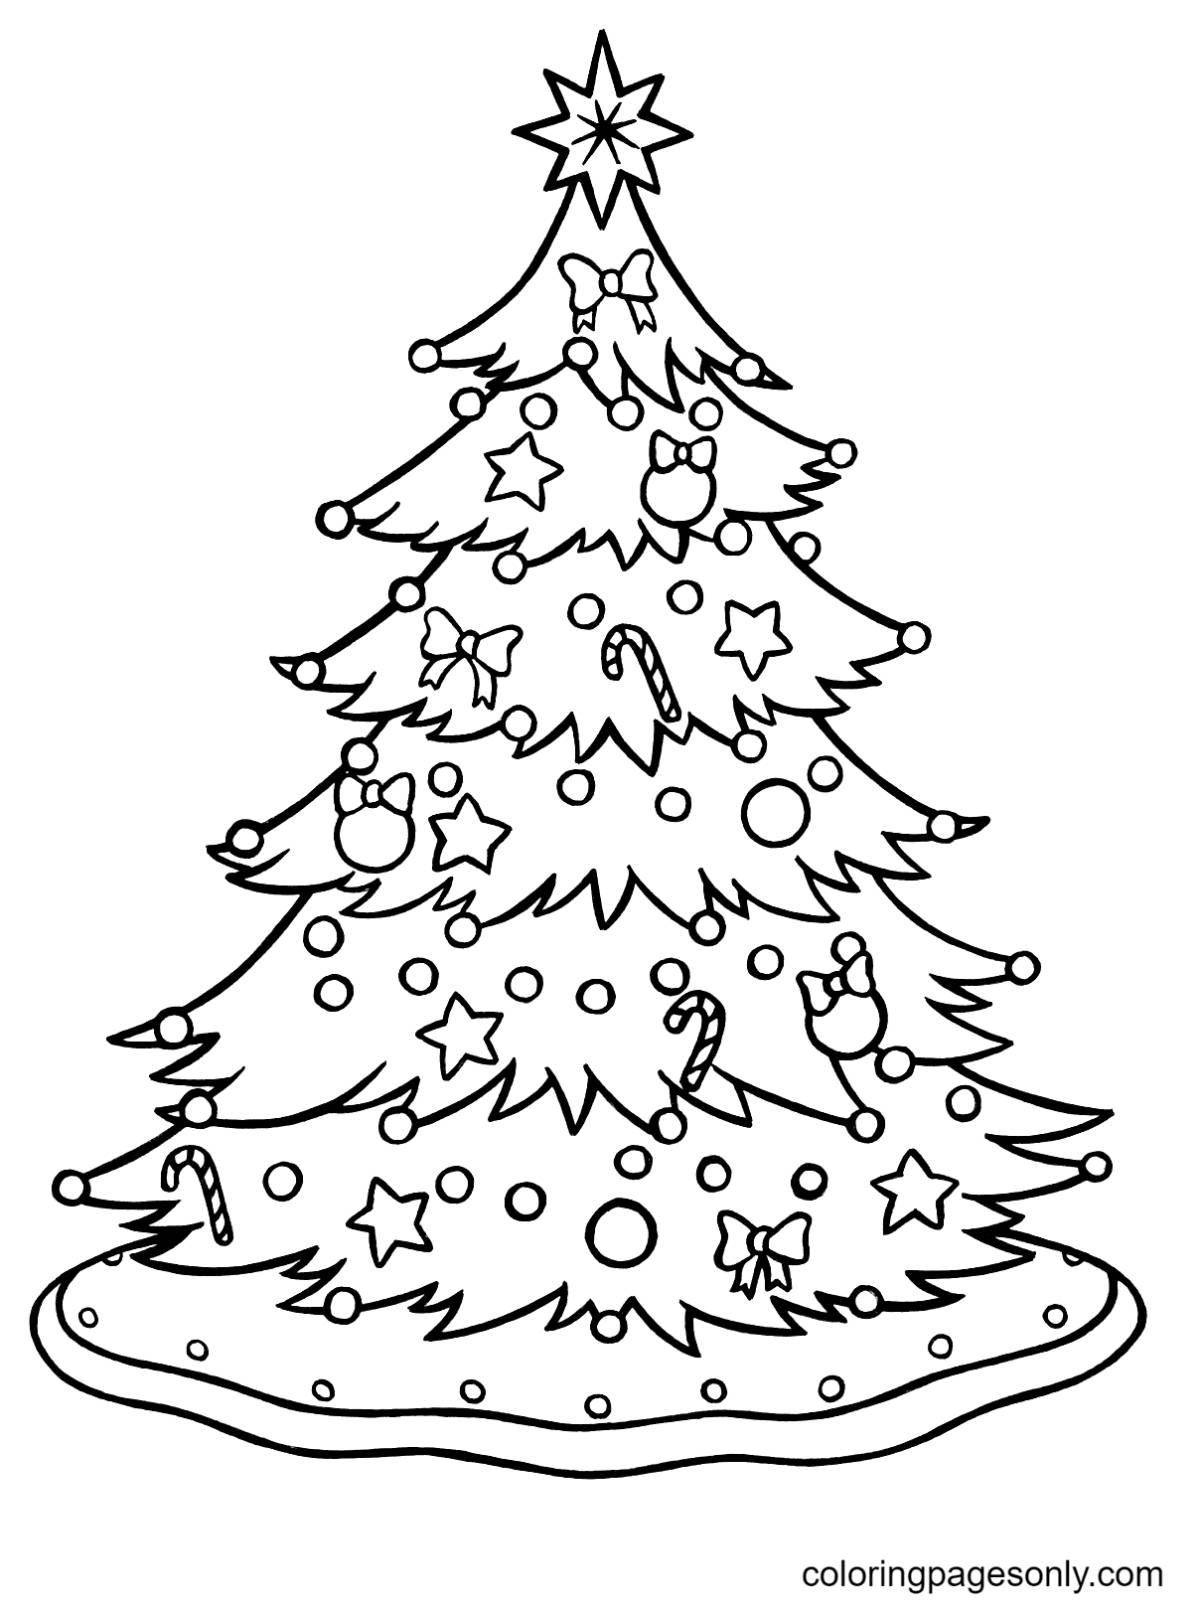 Раскраска милая рождественская елка для детей 5-6 лет